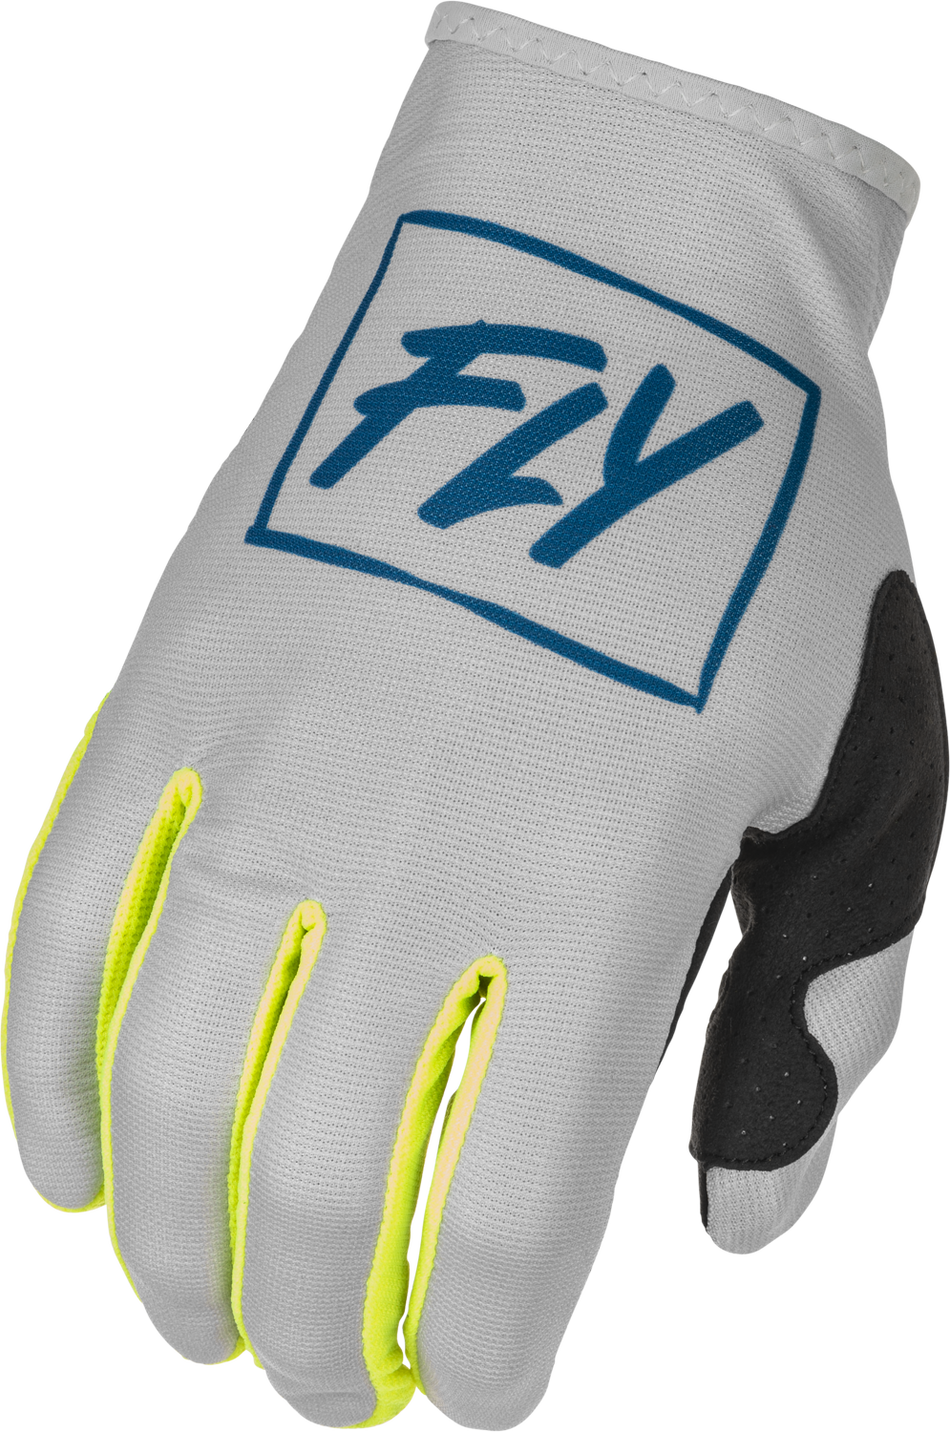 FLY RACING Lite Gloves Grey/Teal/Hi-Vis 2x 375-7112X